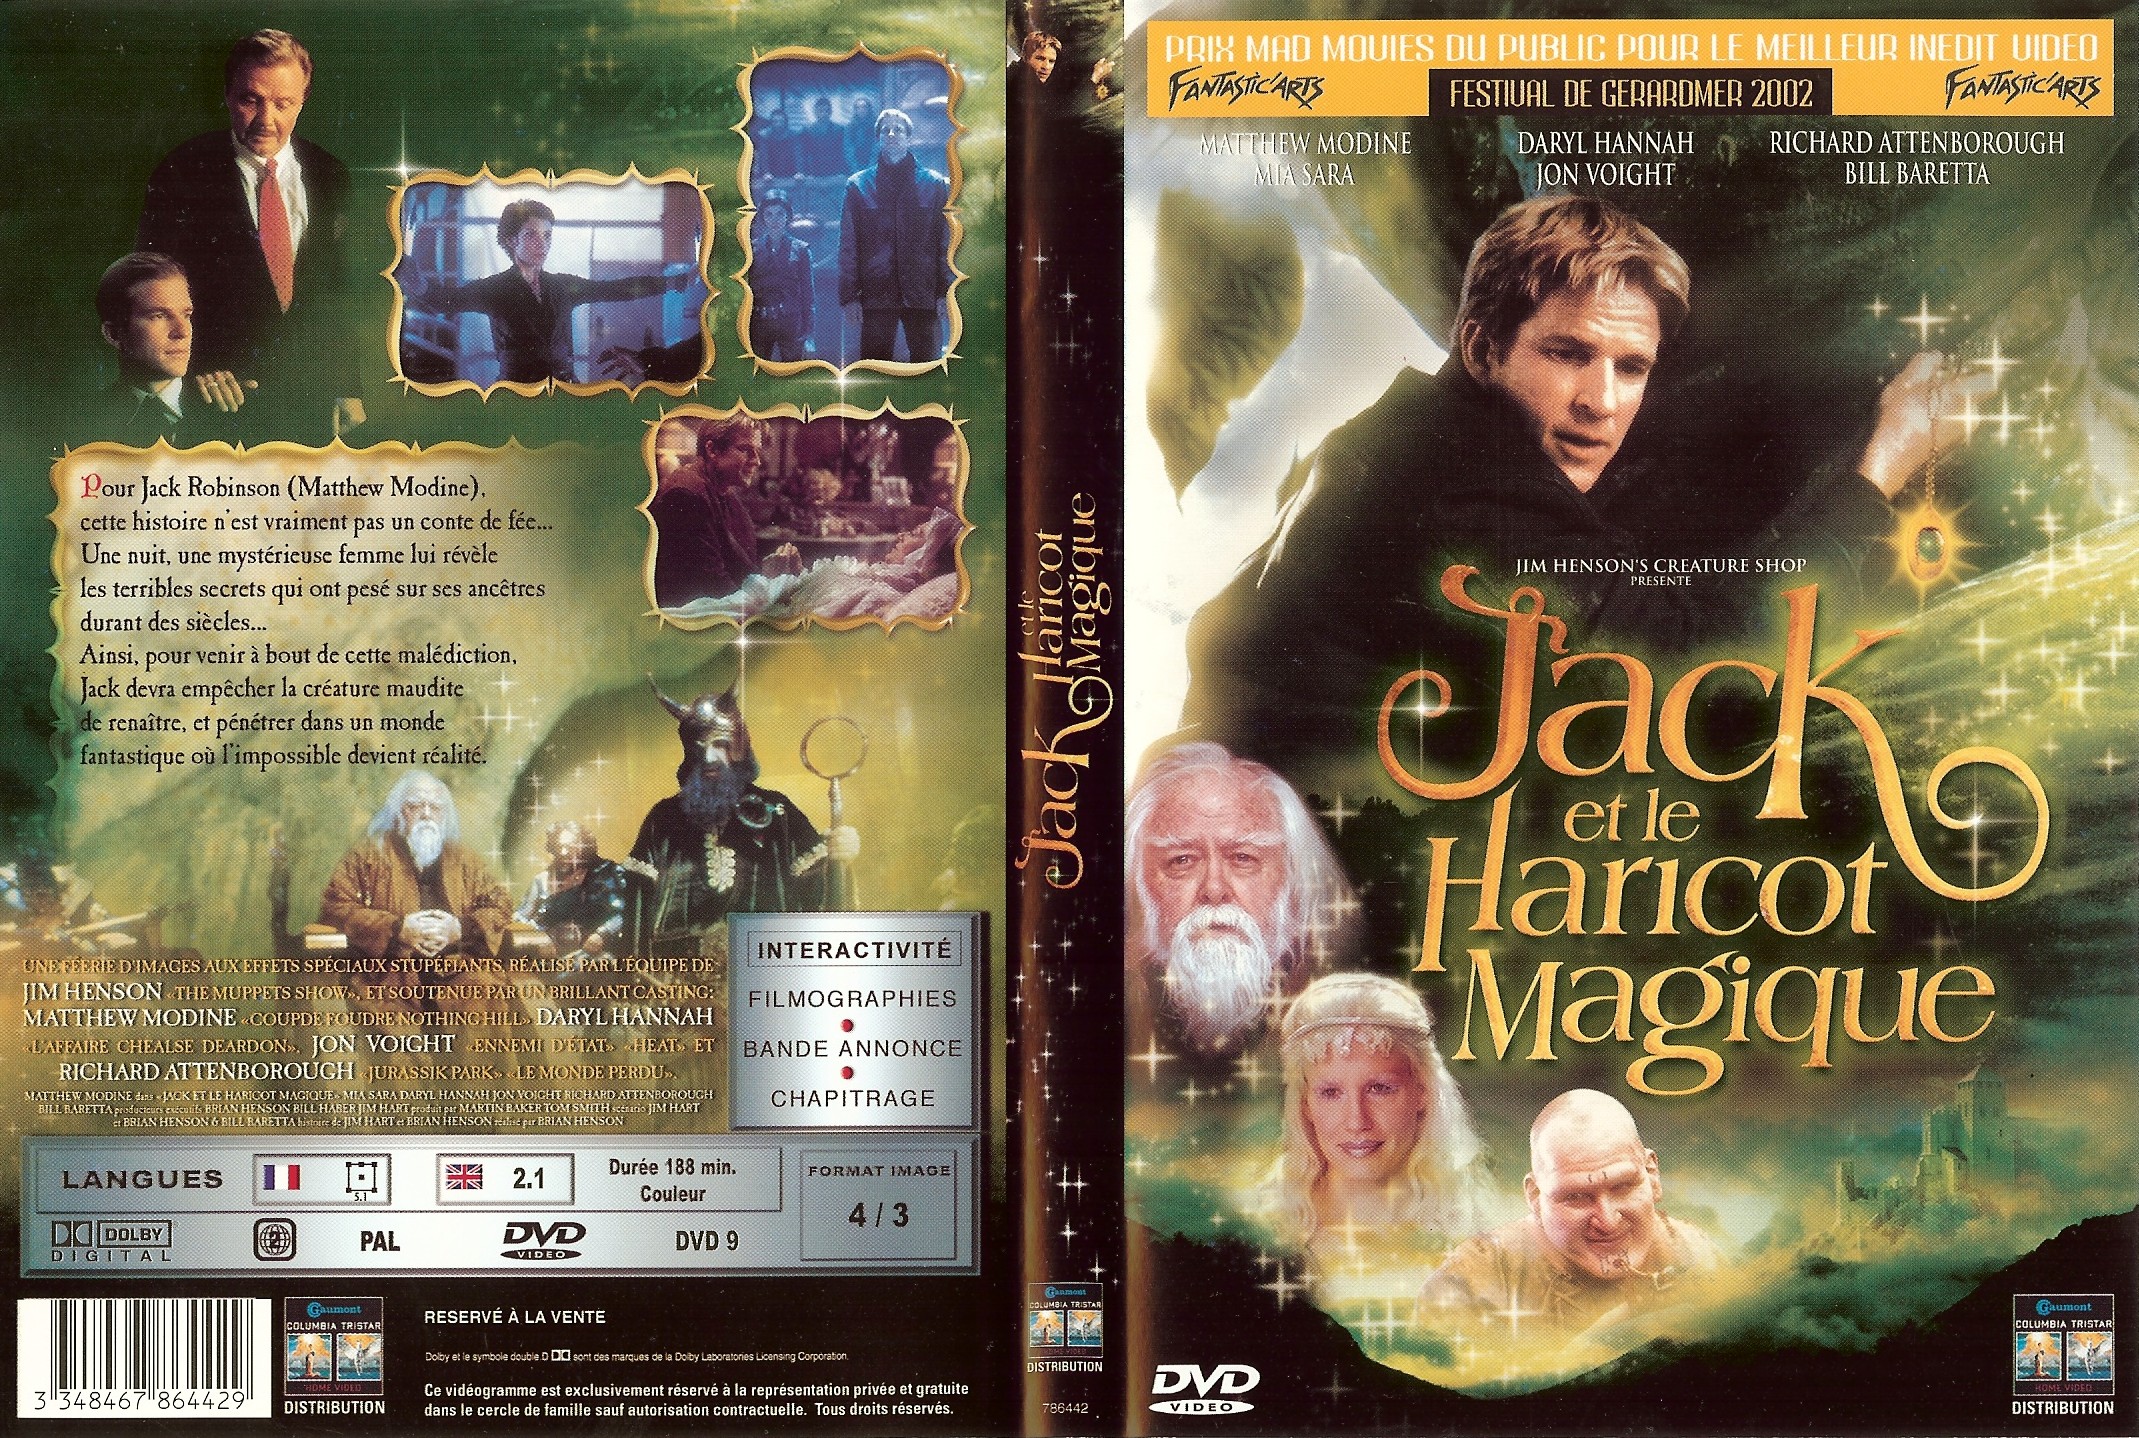 Jaquette DVD Jack et le haricot magique (Matthew Modine)